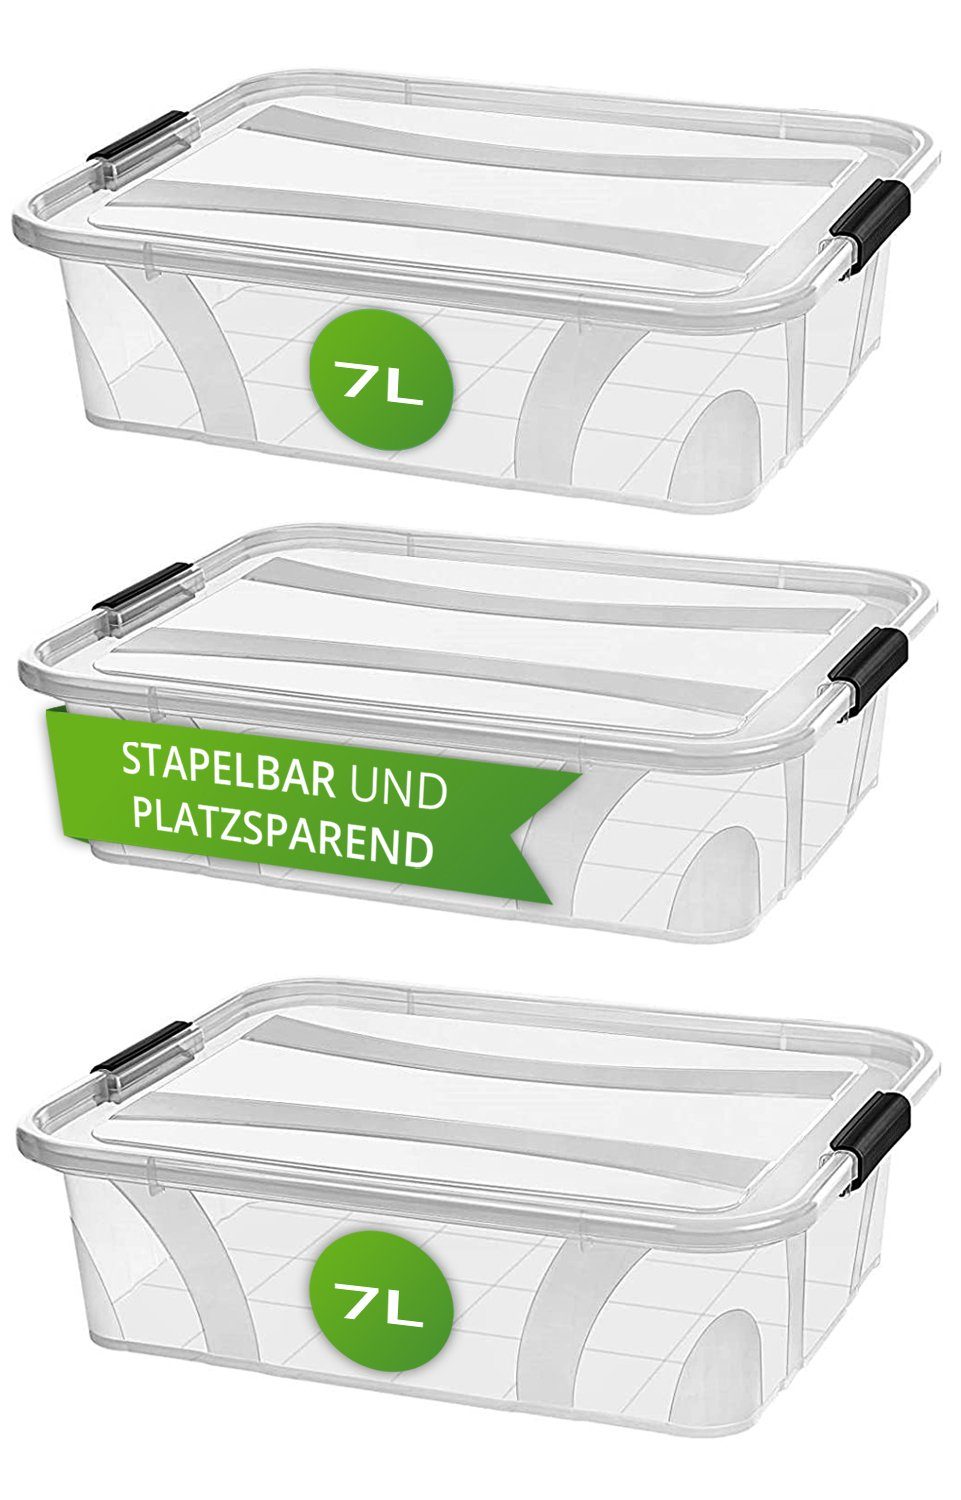 astor24 Aufbewahrungsbox Aufbewahrungsbox mit Deckel Kunststoffboxen Box  Kisten Stapelboxen (Spielzeugbox, 3 St), Größe 7 Liter bis 80 Liter  Plastikbox Aufbewahrung Regalbox